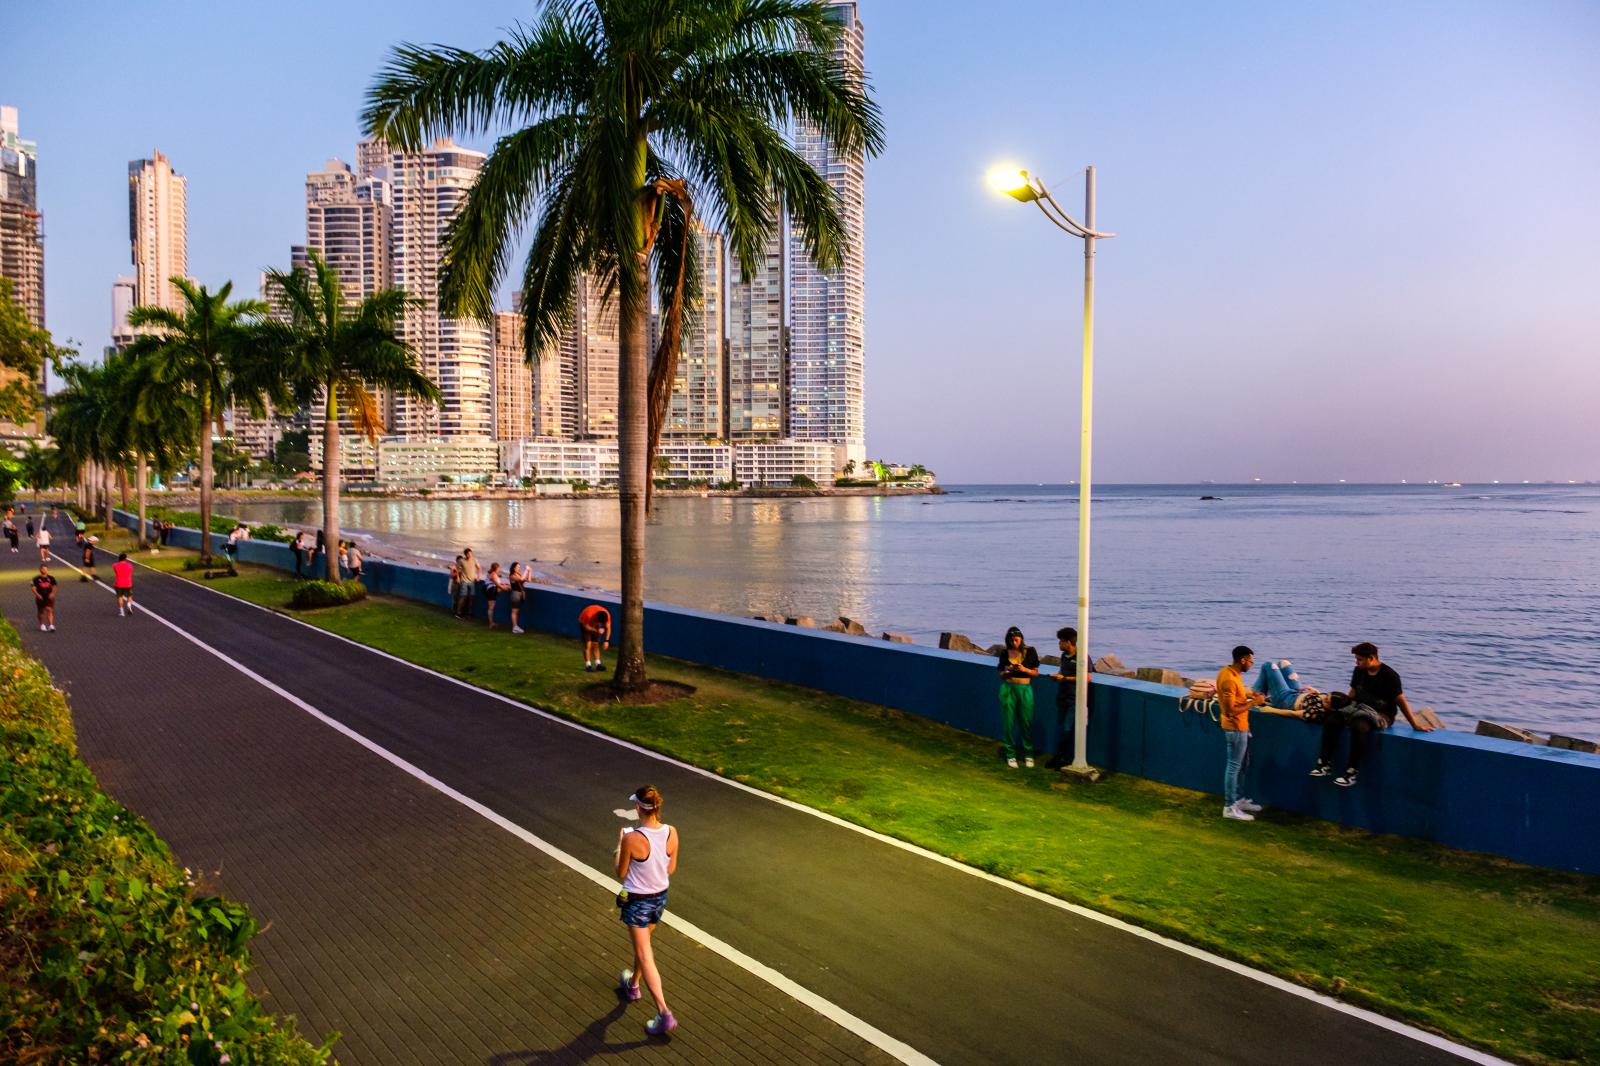 Panama City Skyline | Buy this image